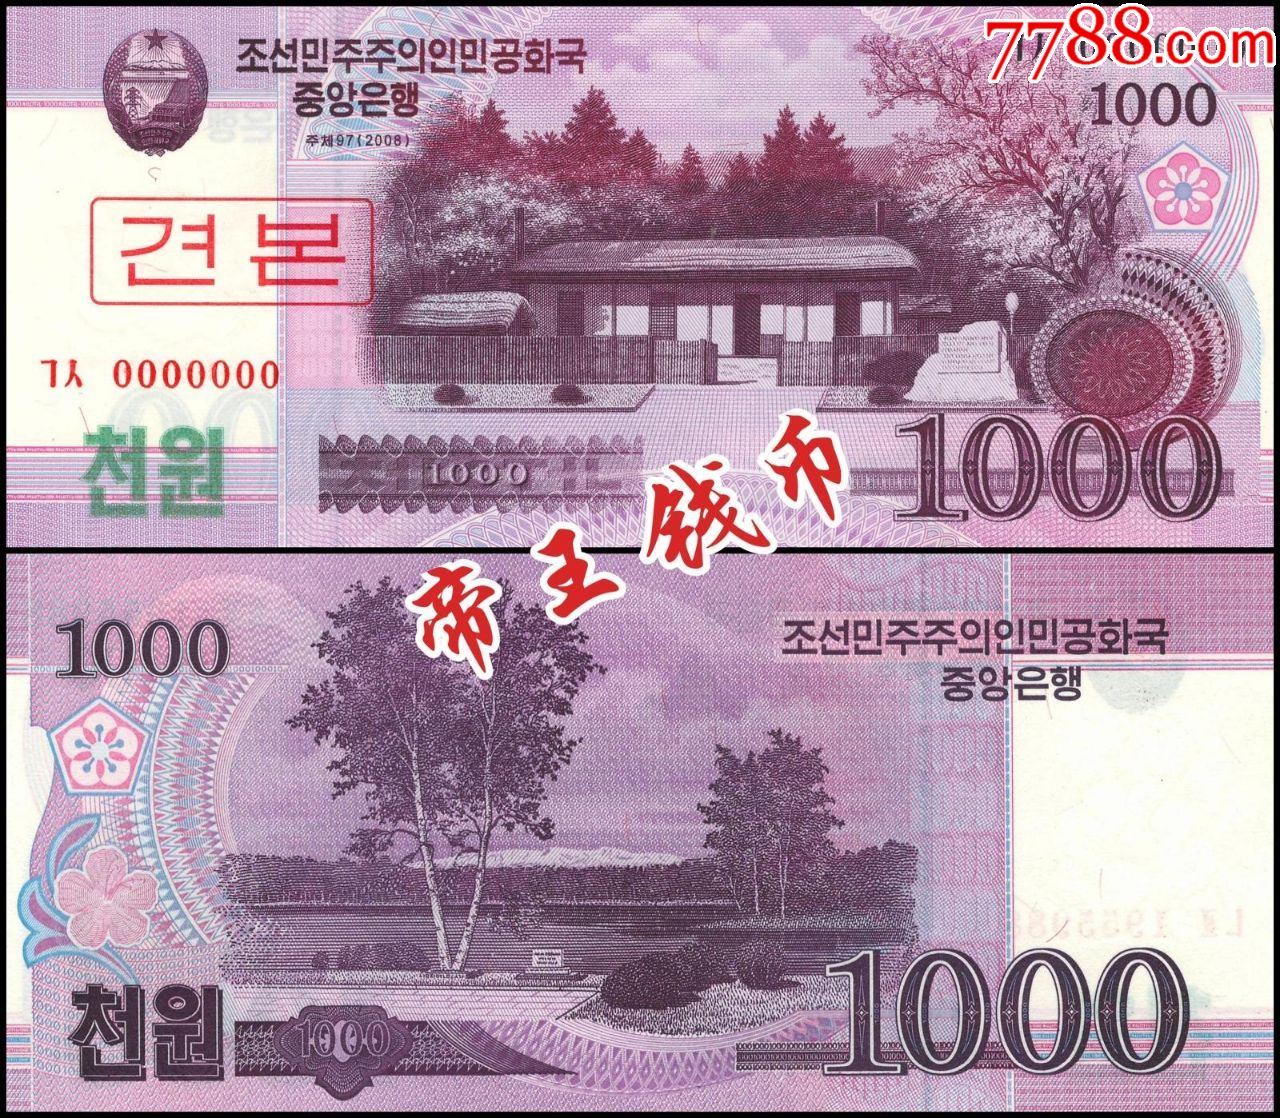 全新unc朝鲜1000元票样(无荧光版)2008年版木兰花水印朝鲜20